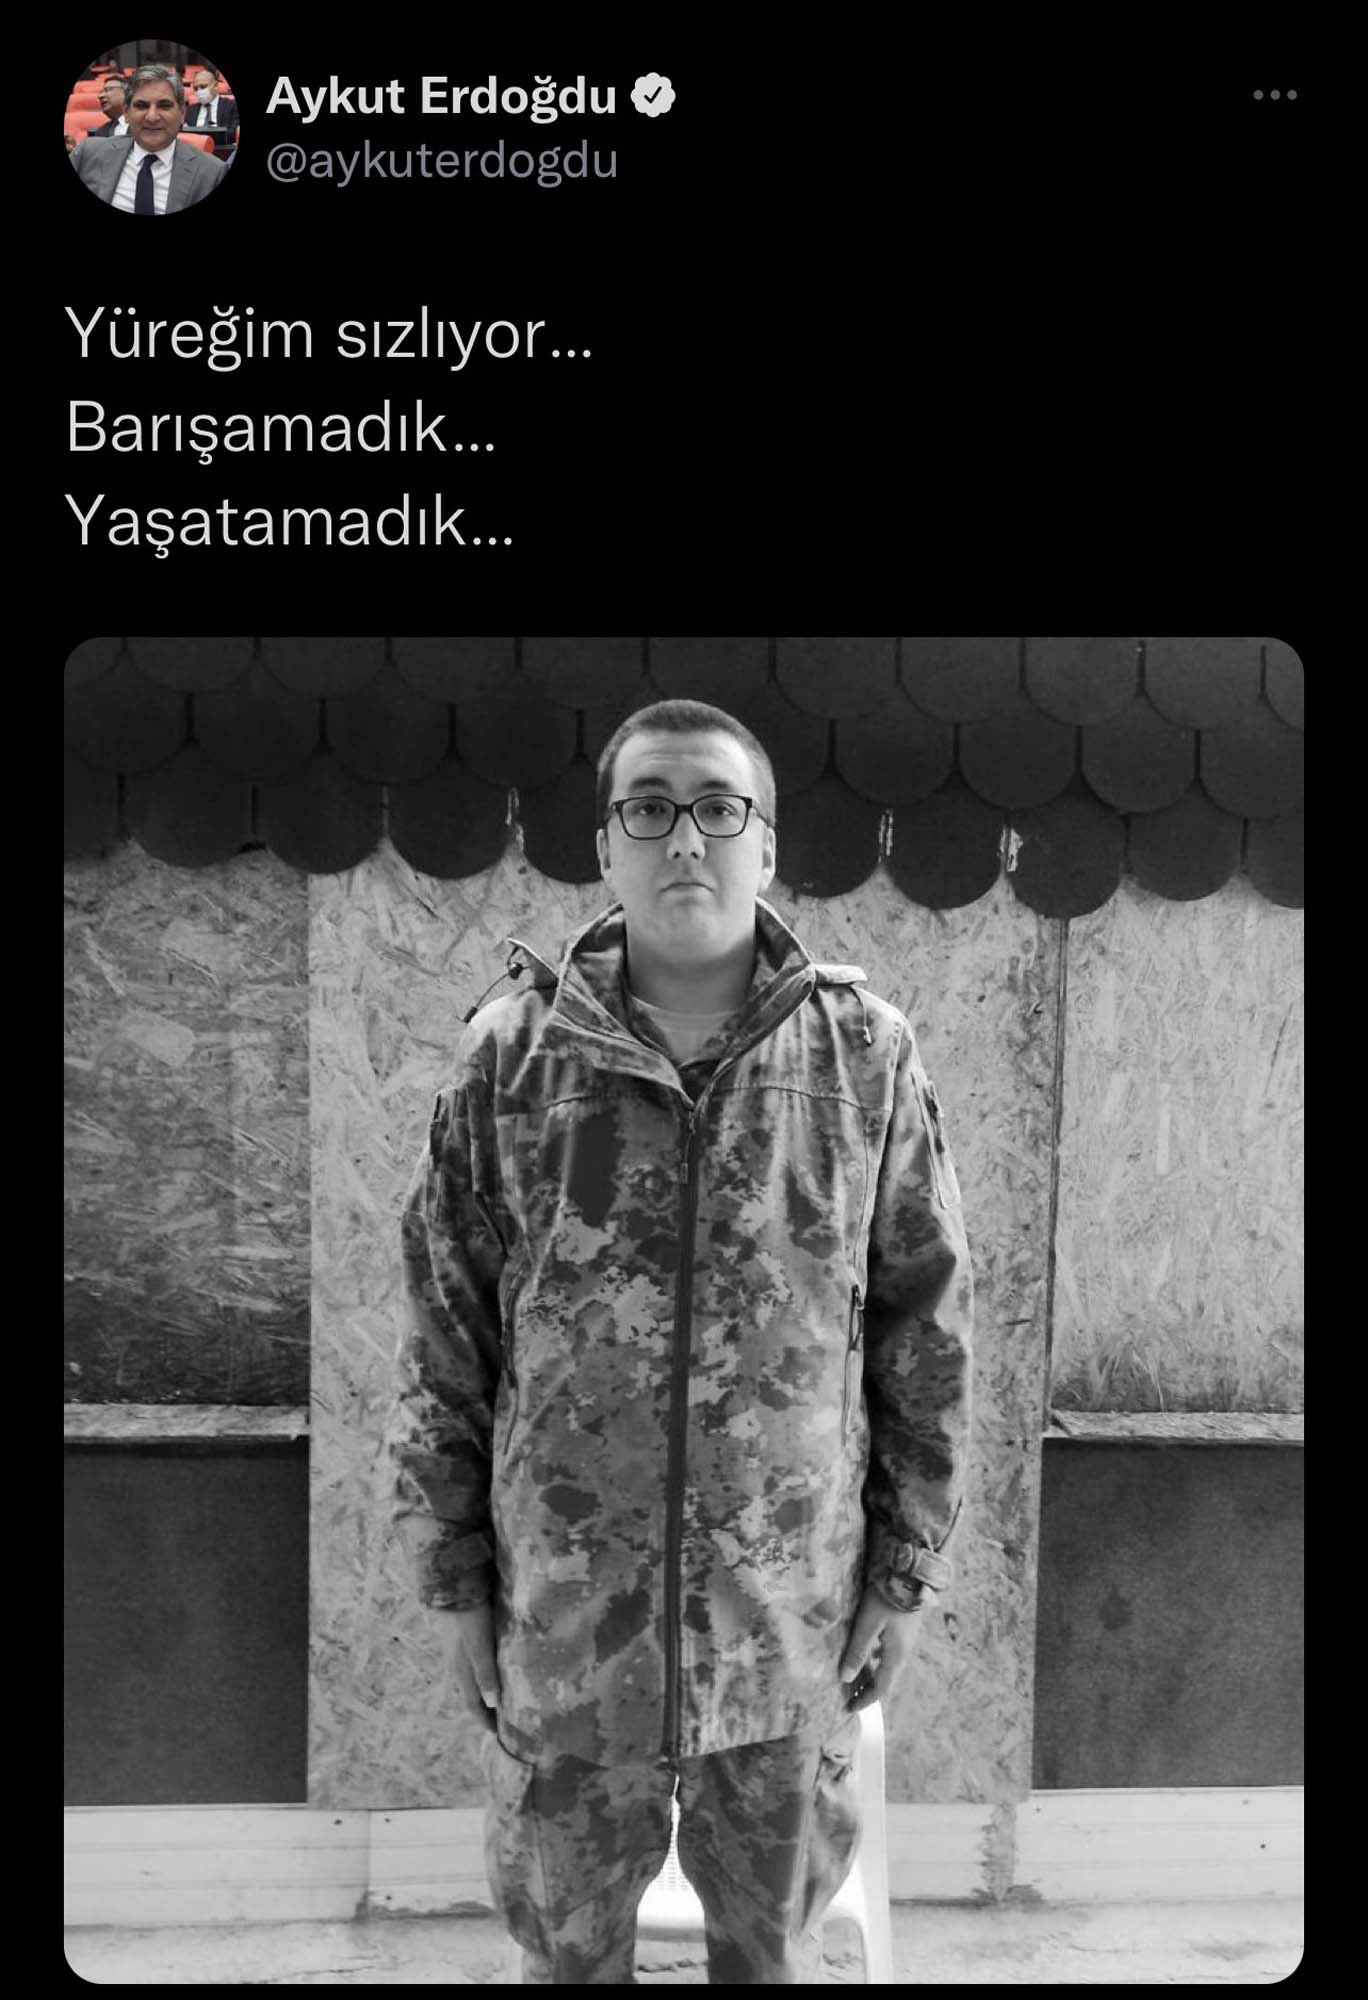 Yer yerinden oynadı! CHP'li Aykut Erdoğdu'nun, Şehit Tarık Tarcan'a taziye mesajı Türk halkını çileden çıkardı! PKK sizi avucunun içine almış!